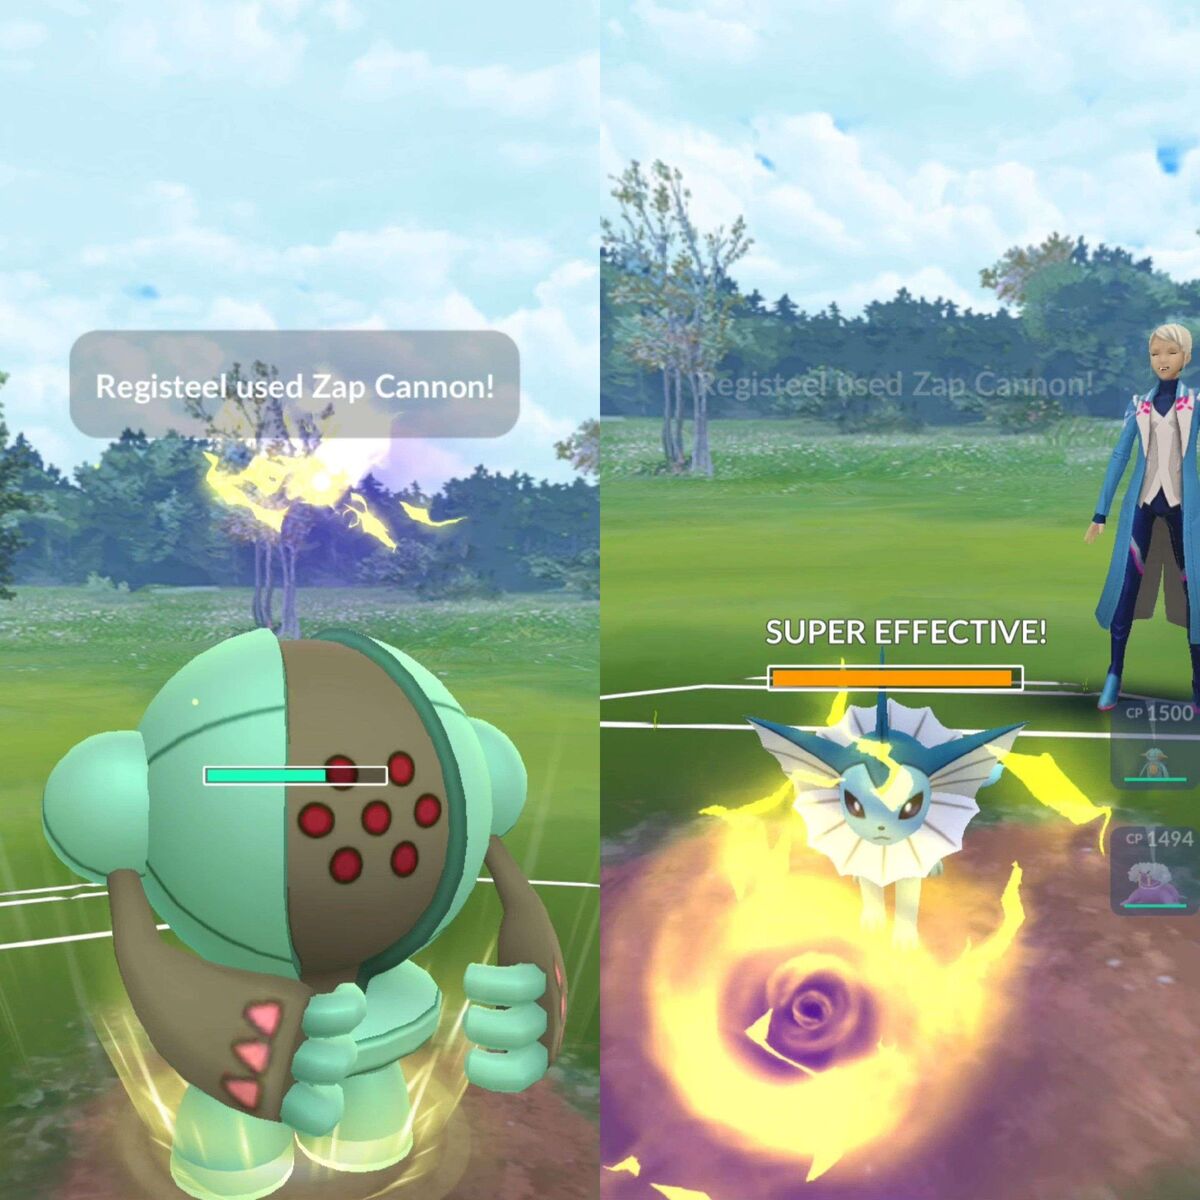 Zap Cannon in Pokémon GO